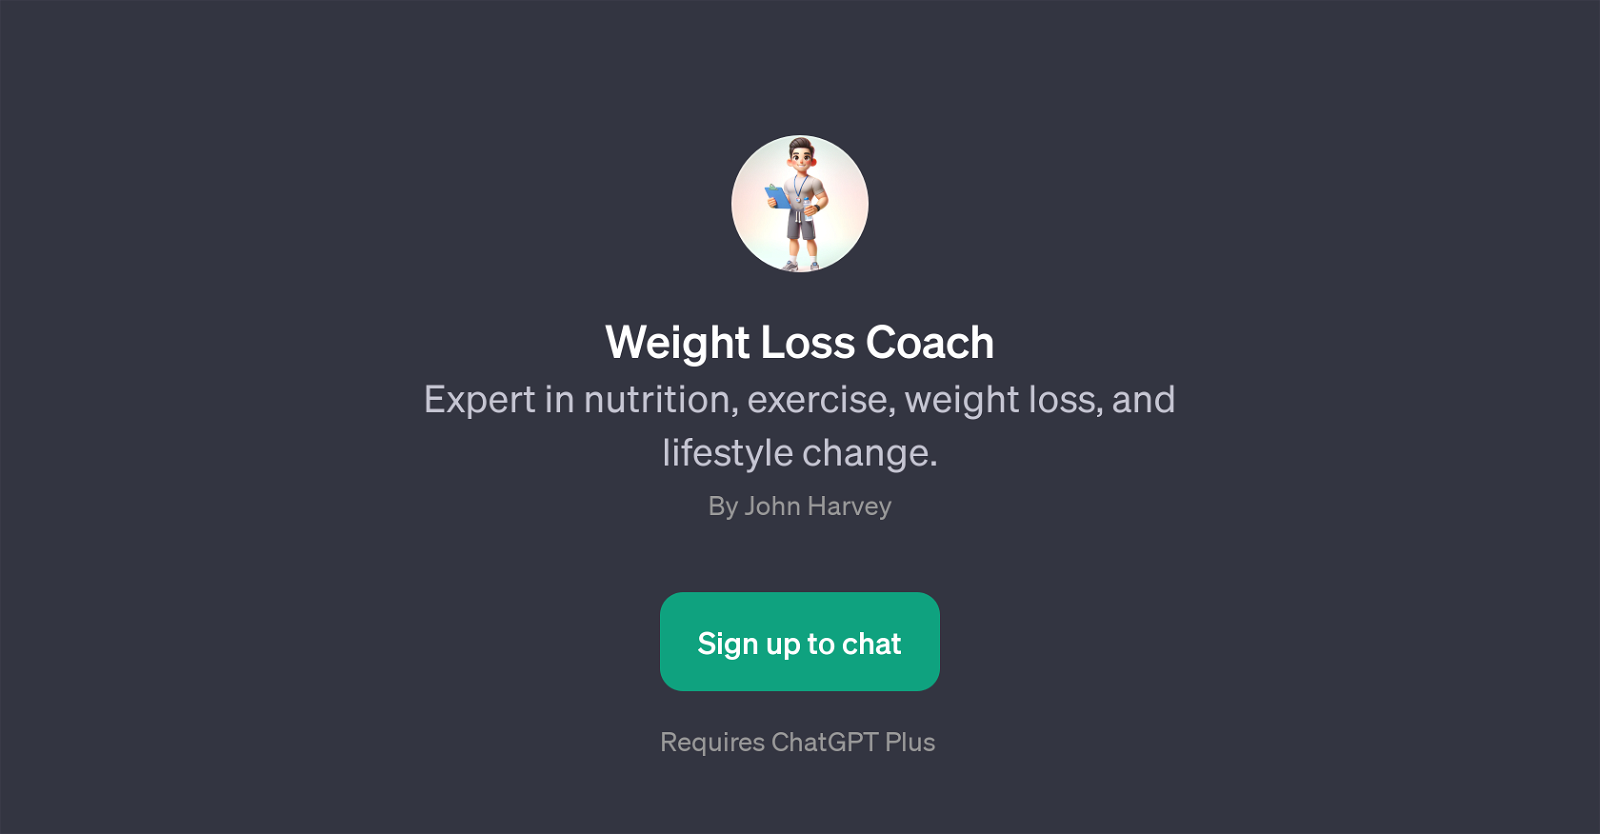 Weight Loss Coach website